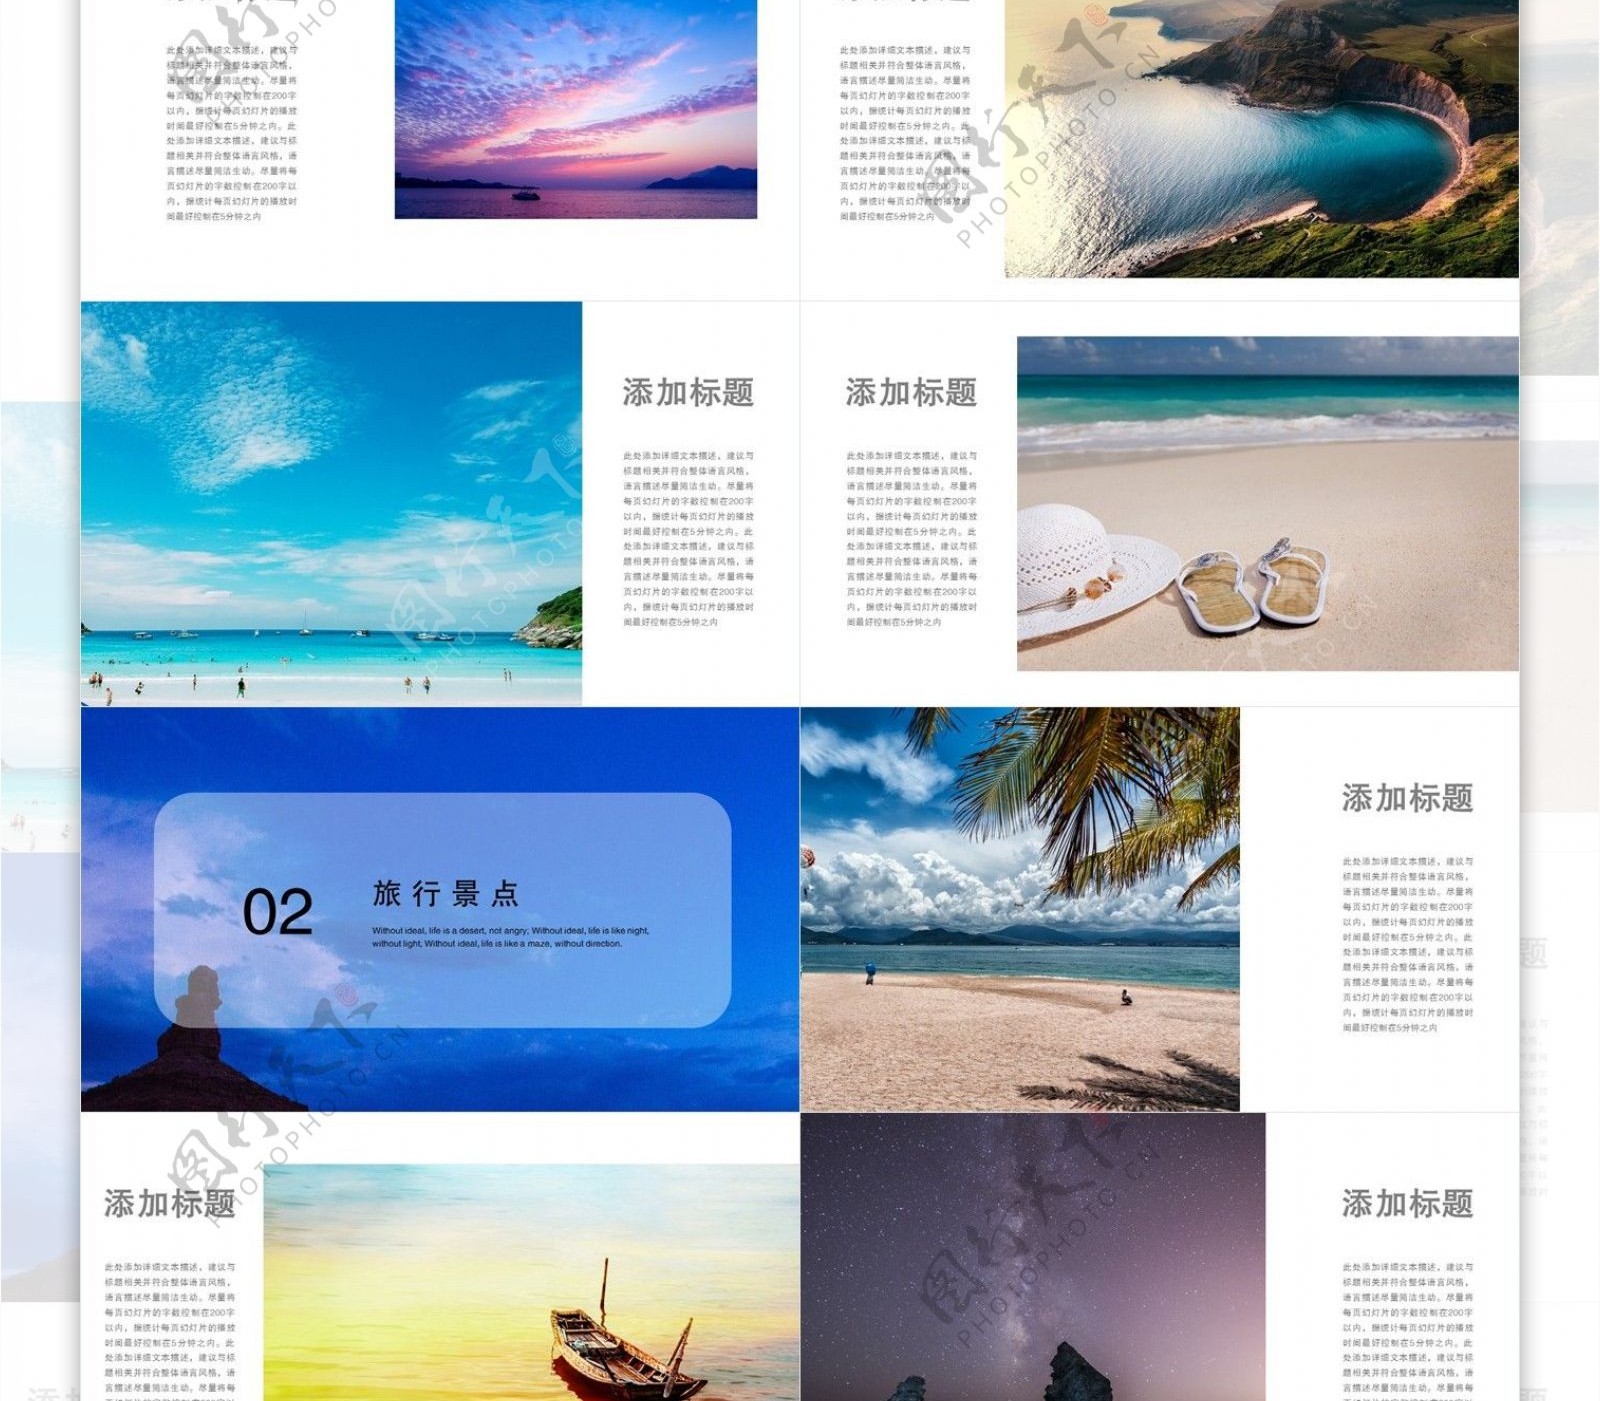 39清新简约旅行画册宣传PPT模板